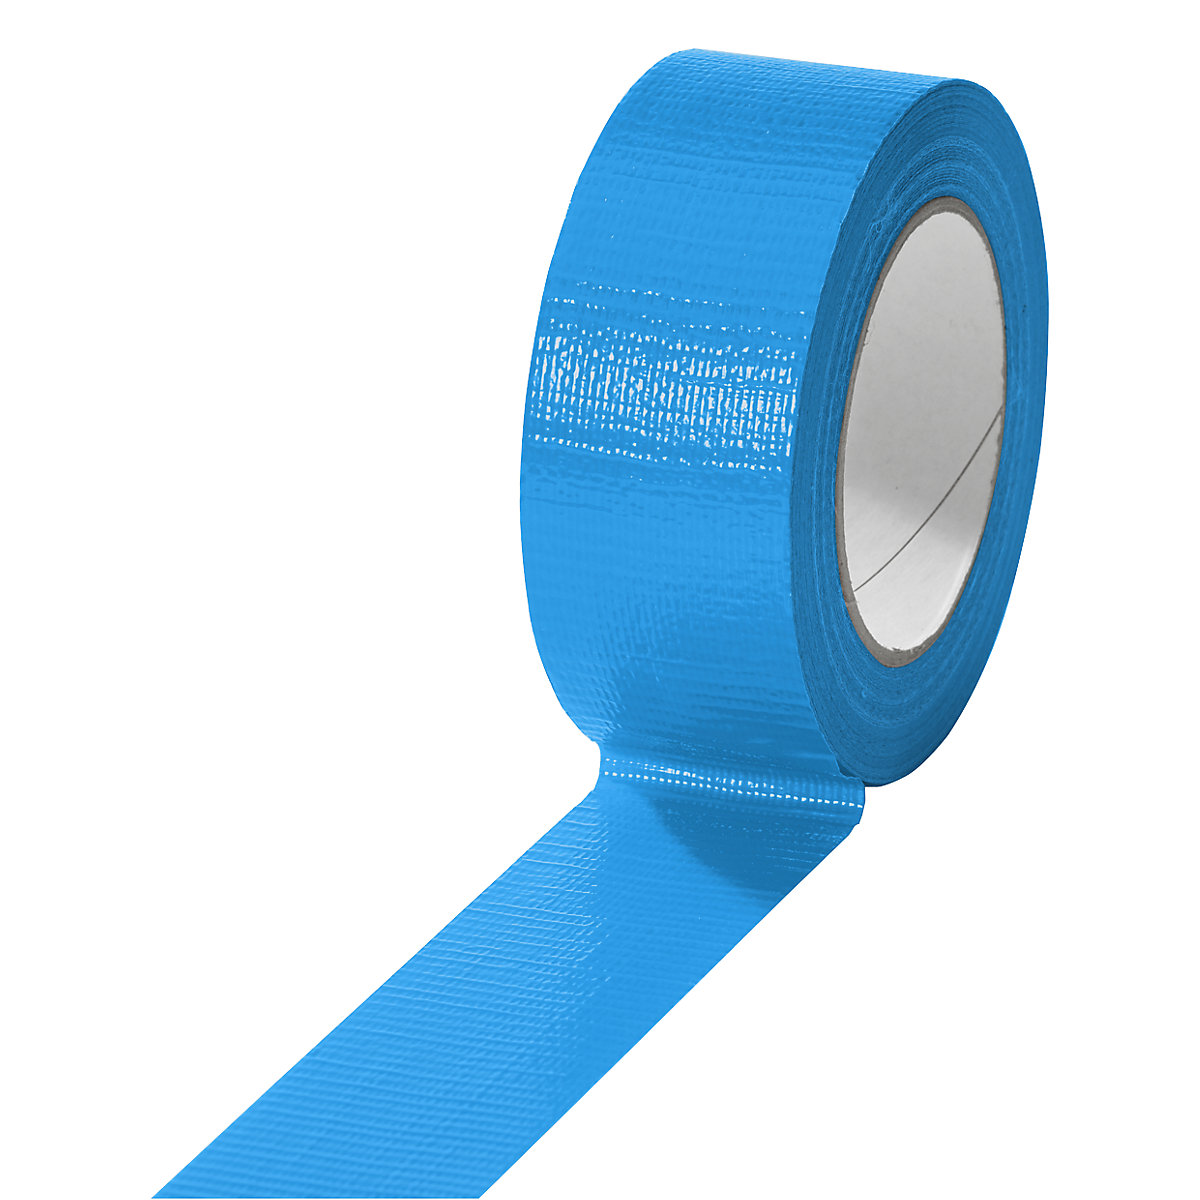 Traka od tkanine, u različitim bojama, pak. 24 role, u plavoj boji, širina trake 38 mm